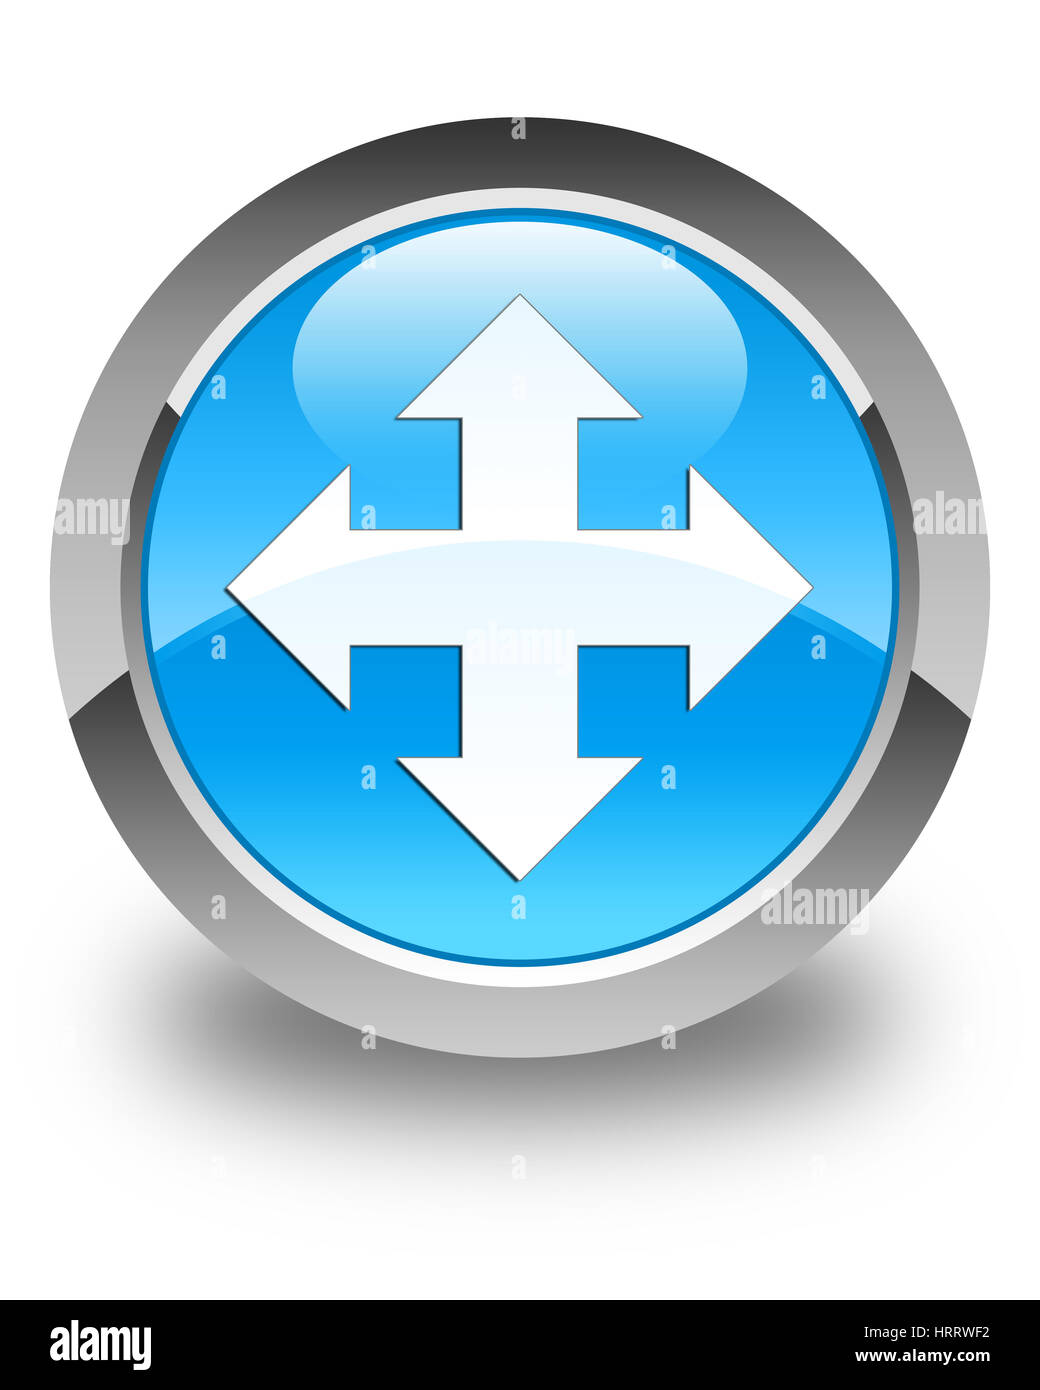 L'icône Déplacer isolé sur le bouton rond bleu cyan brillant abstract illustration Banque D'Images